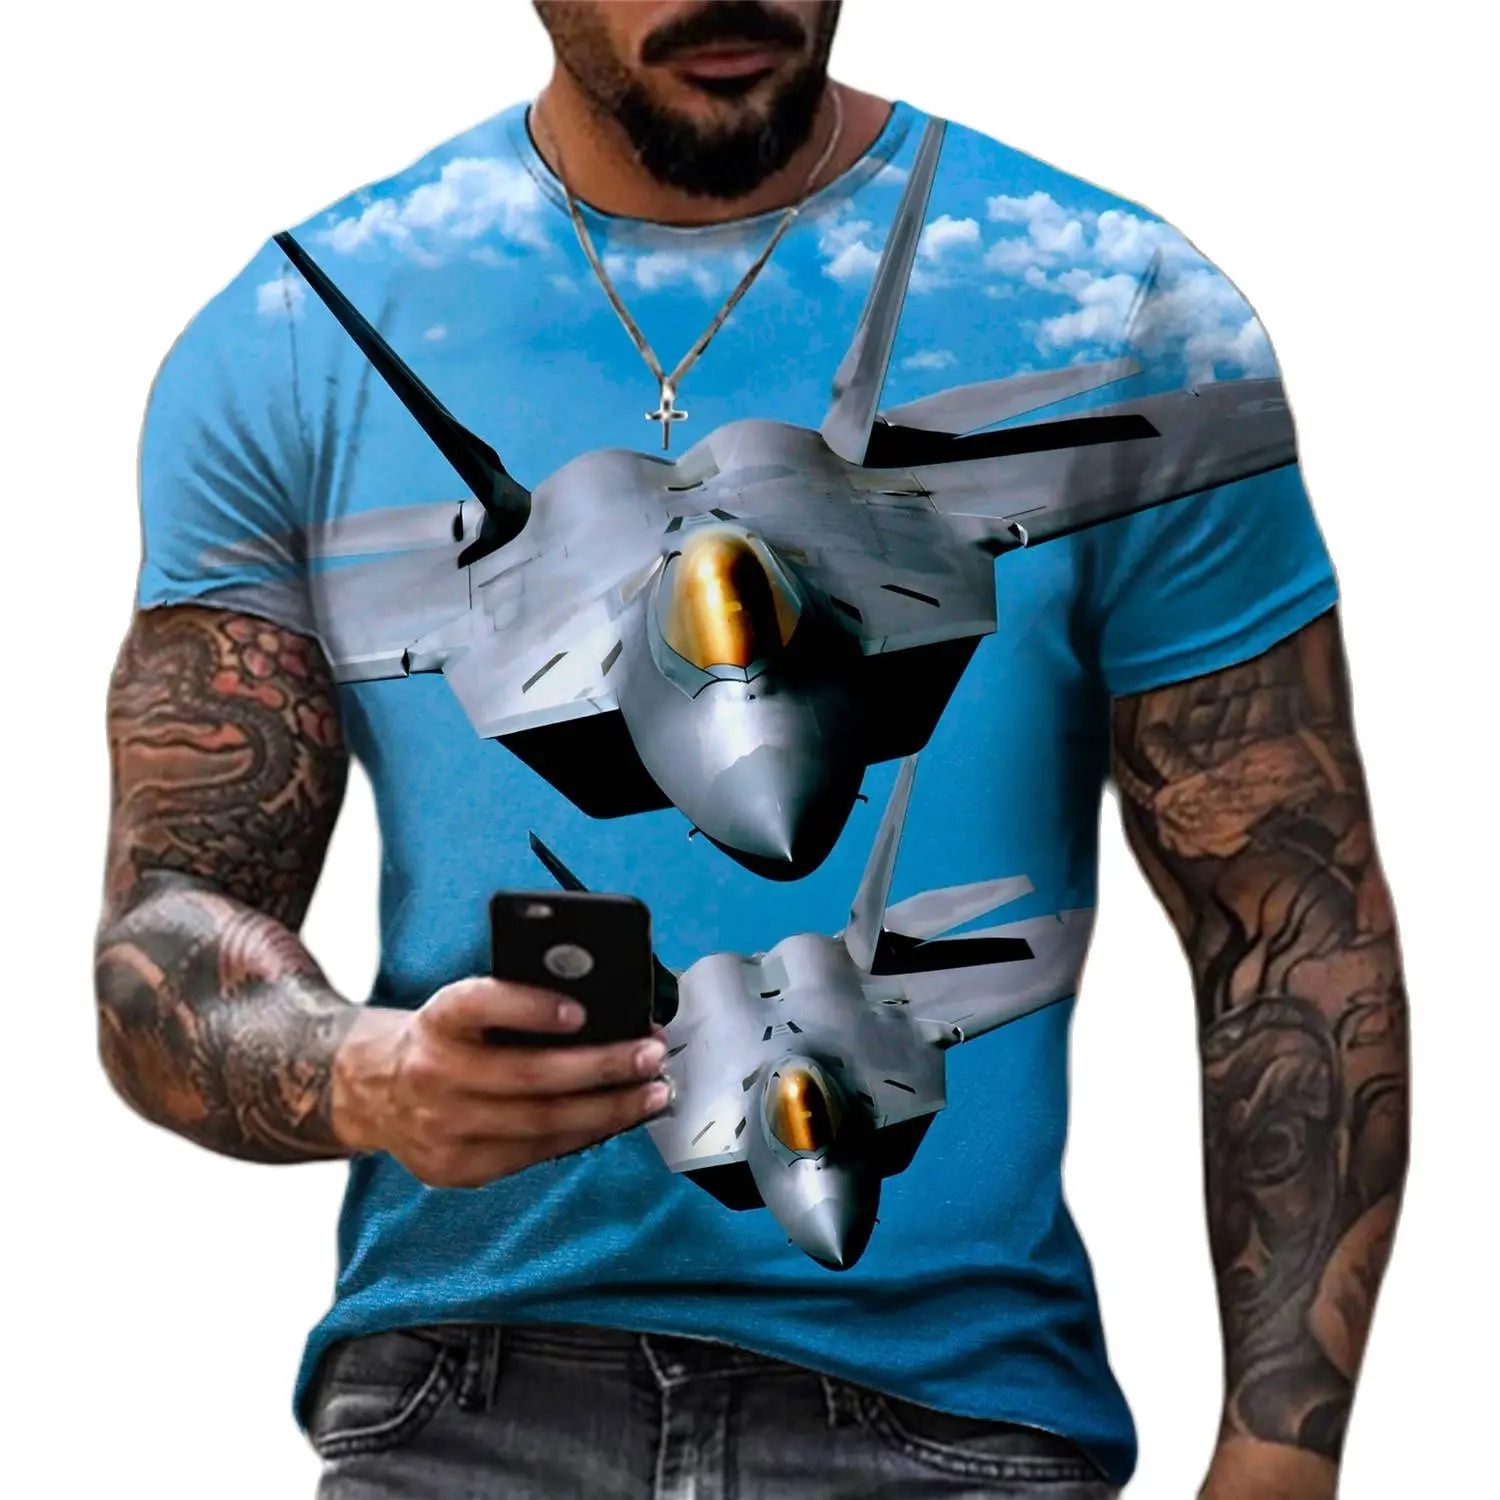 Camiseta con estampado 3d de aviones de combate para entusiastas militares, camiseta informal de manga corta con personalidad, Tops deportivos